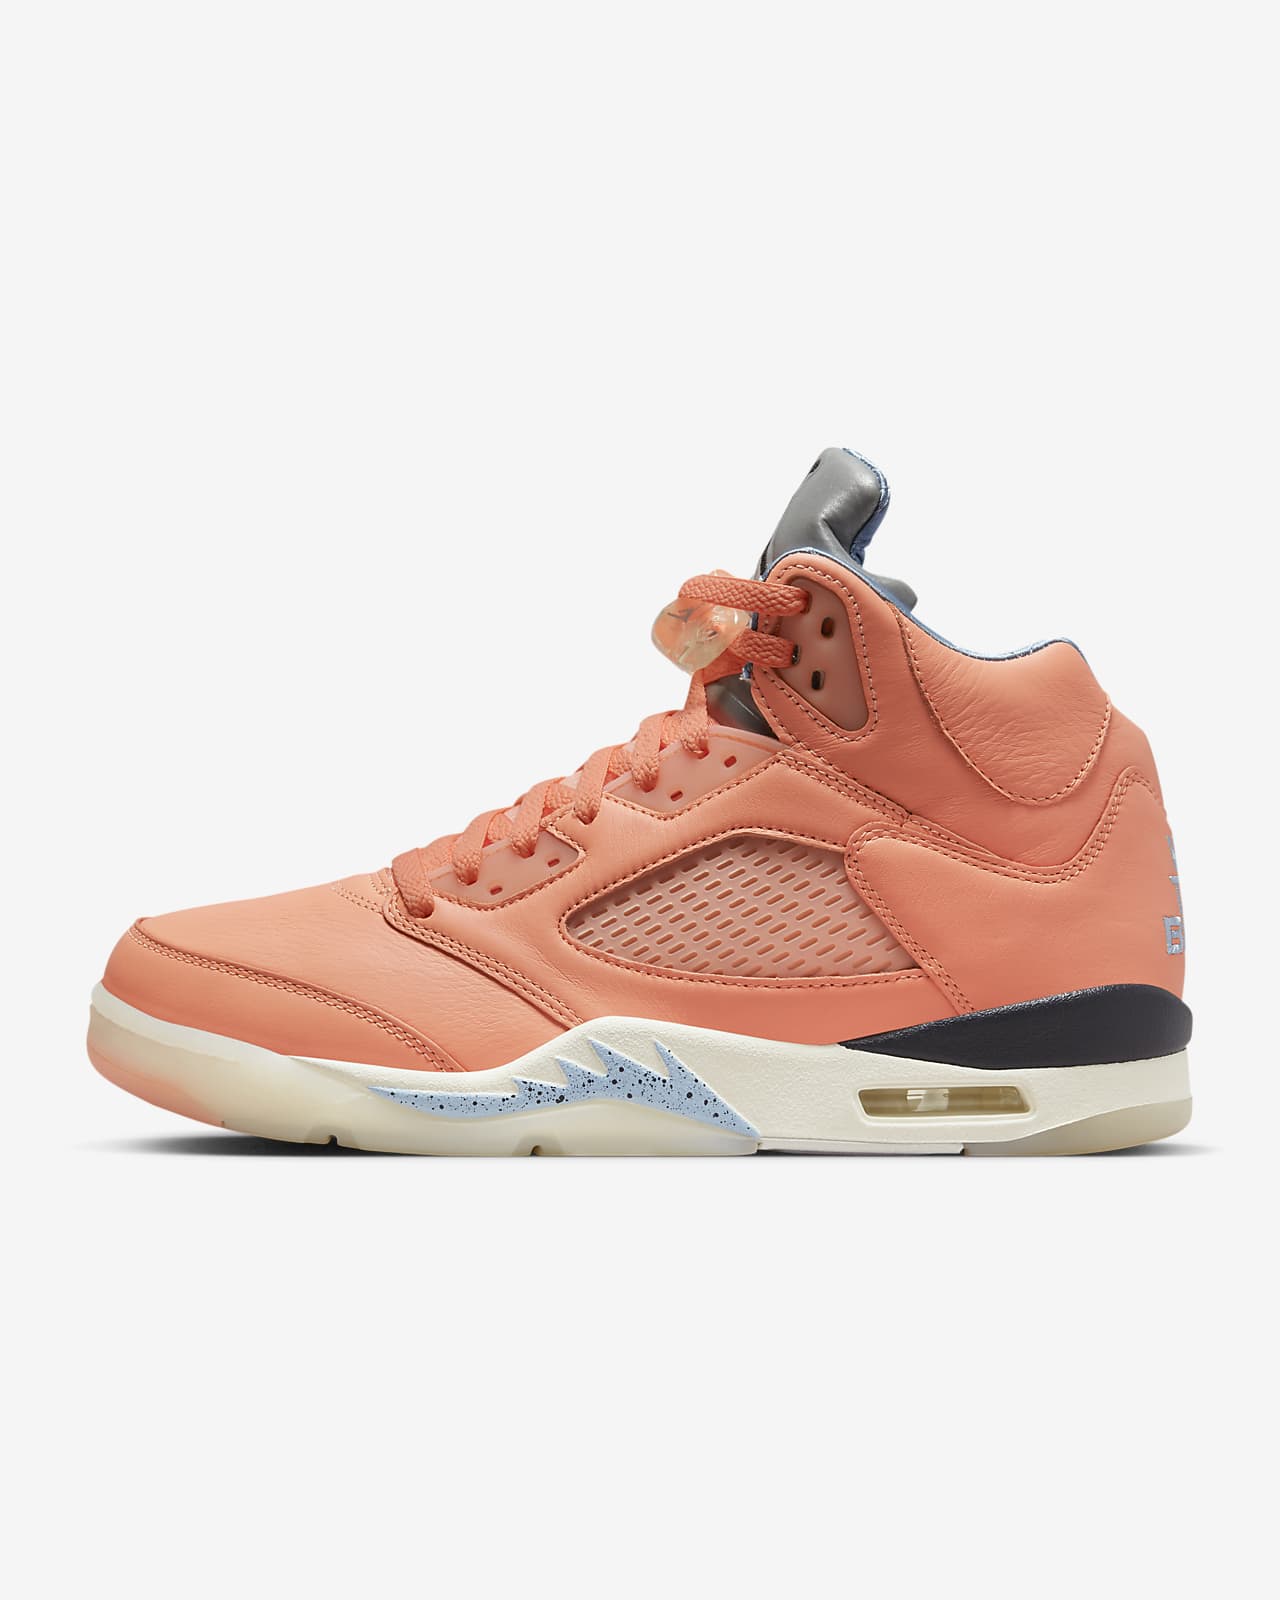 Sentimenteel kapsel Onbekwaamheid Air Jordan 5 x DJ Khaled Men's Shoes. Nike ID